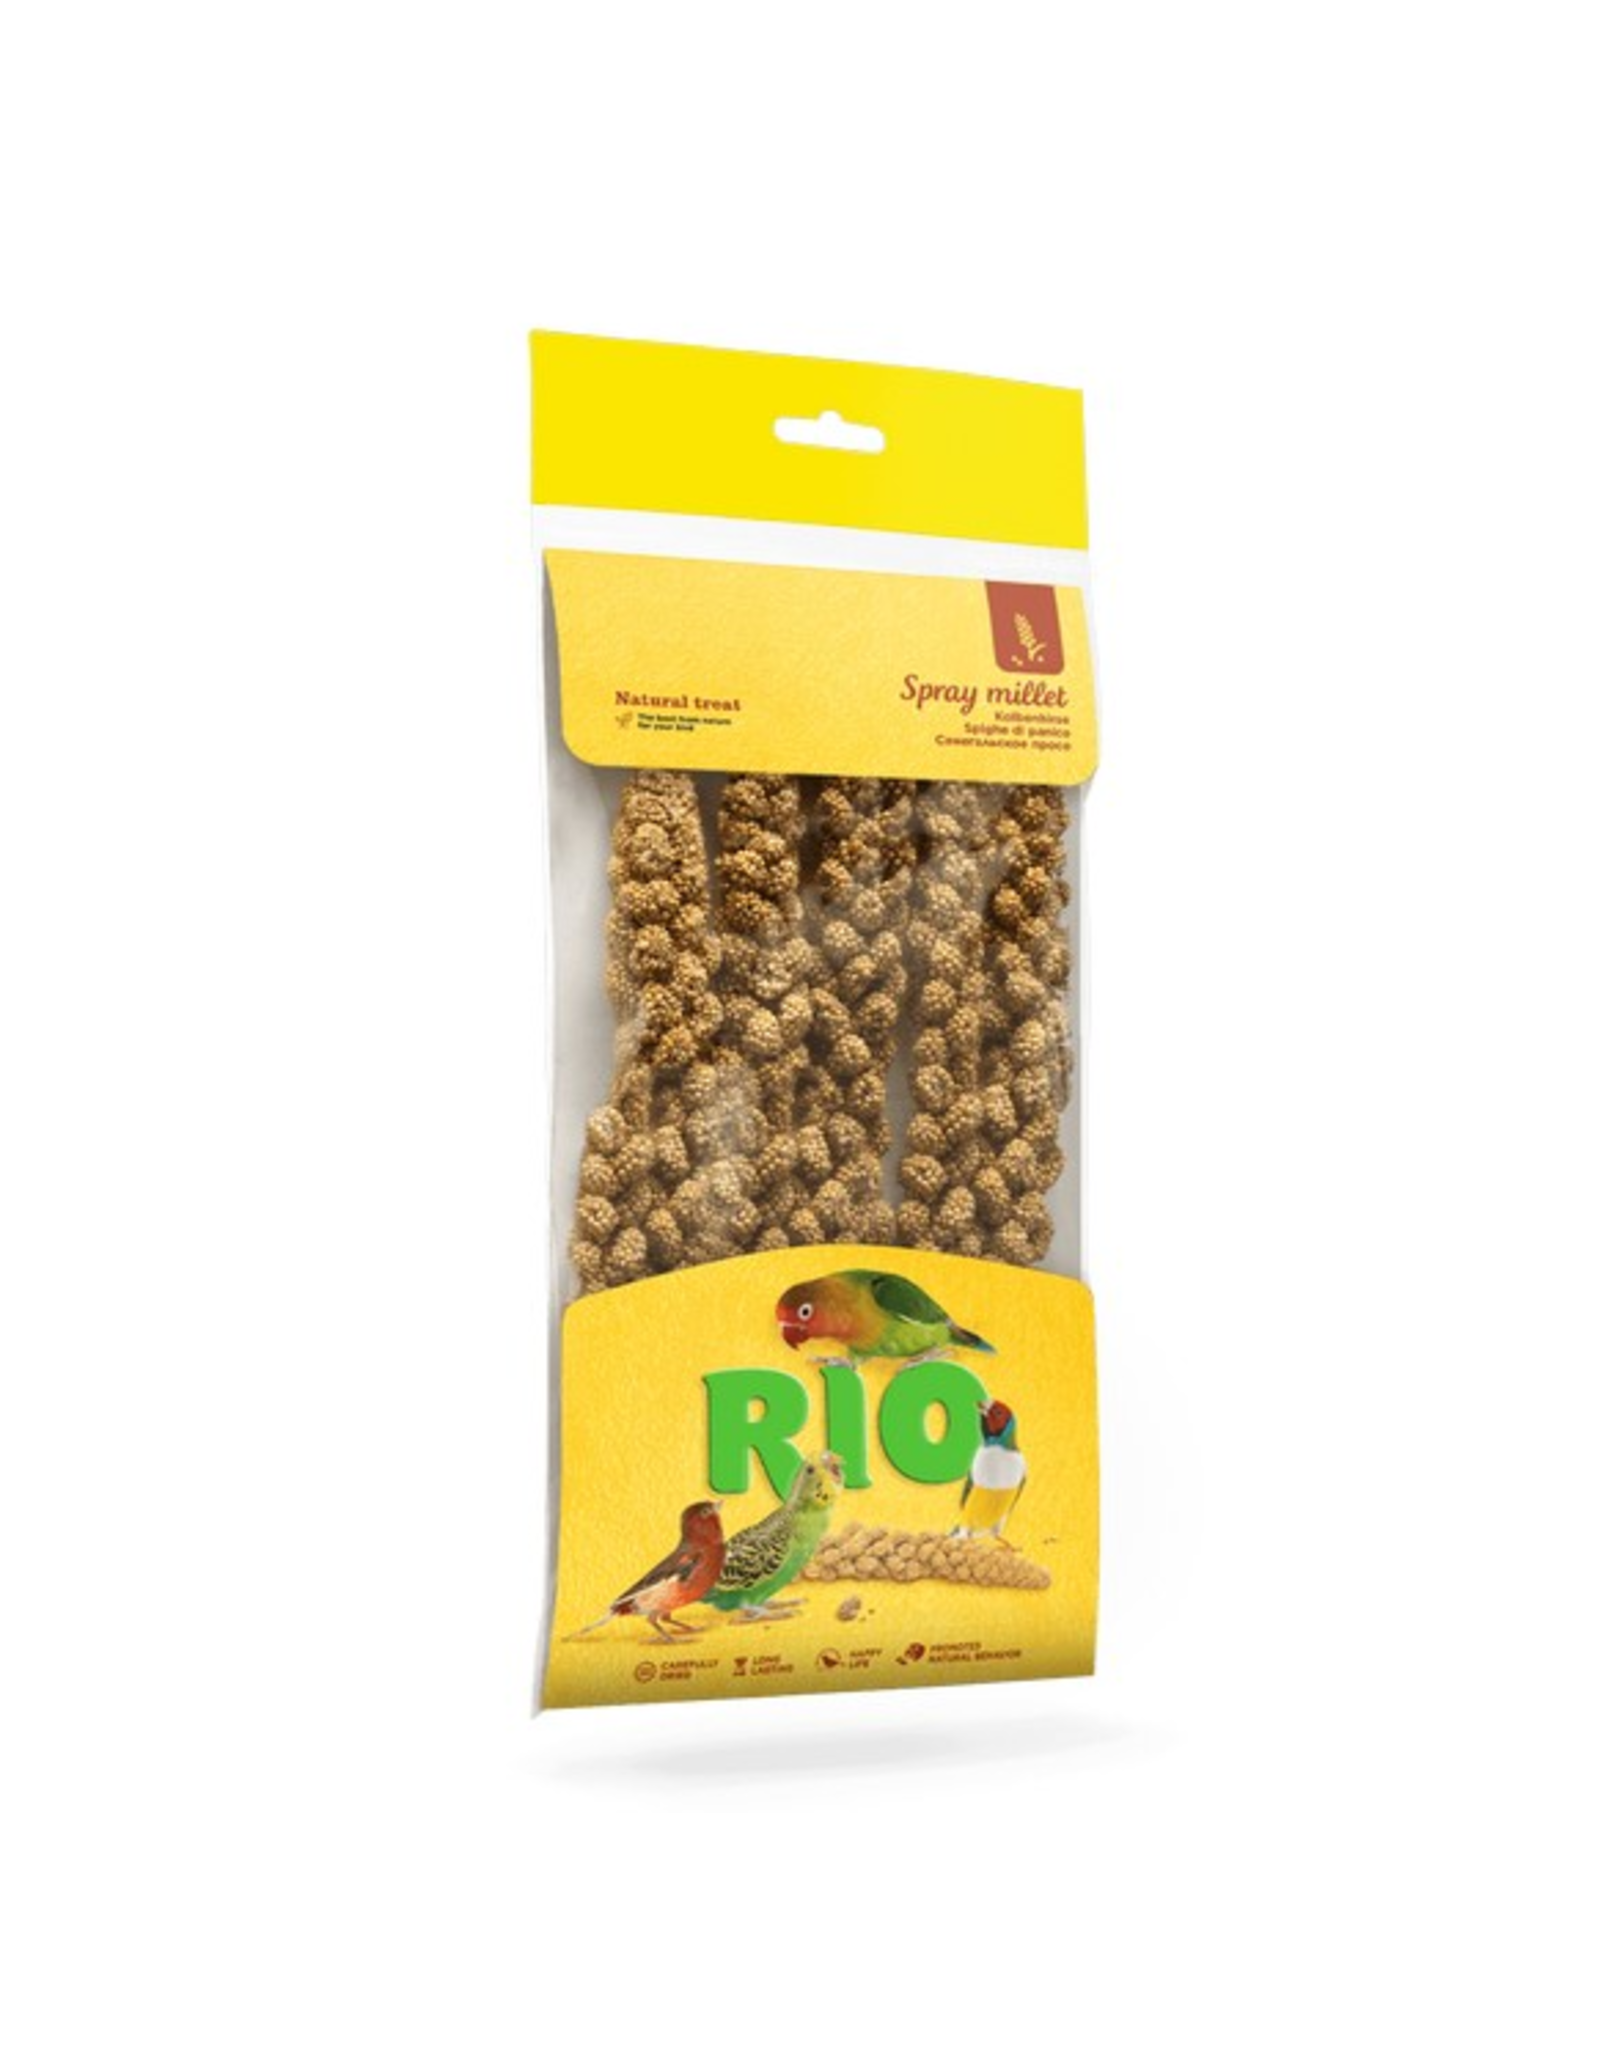 Rio Rio Millet Spray 100g